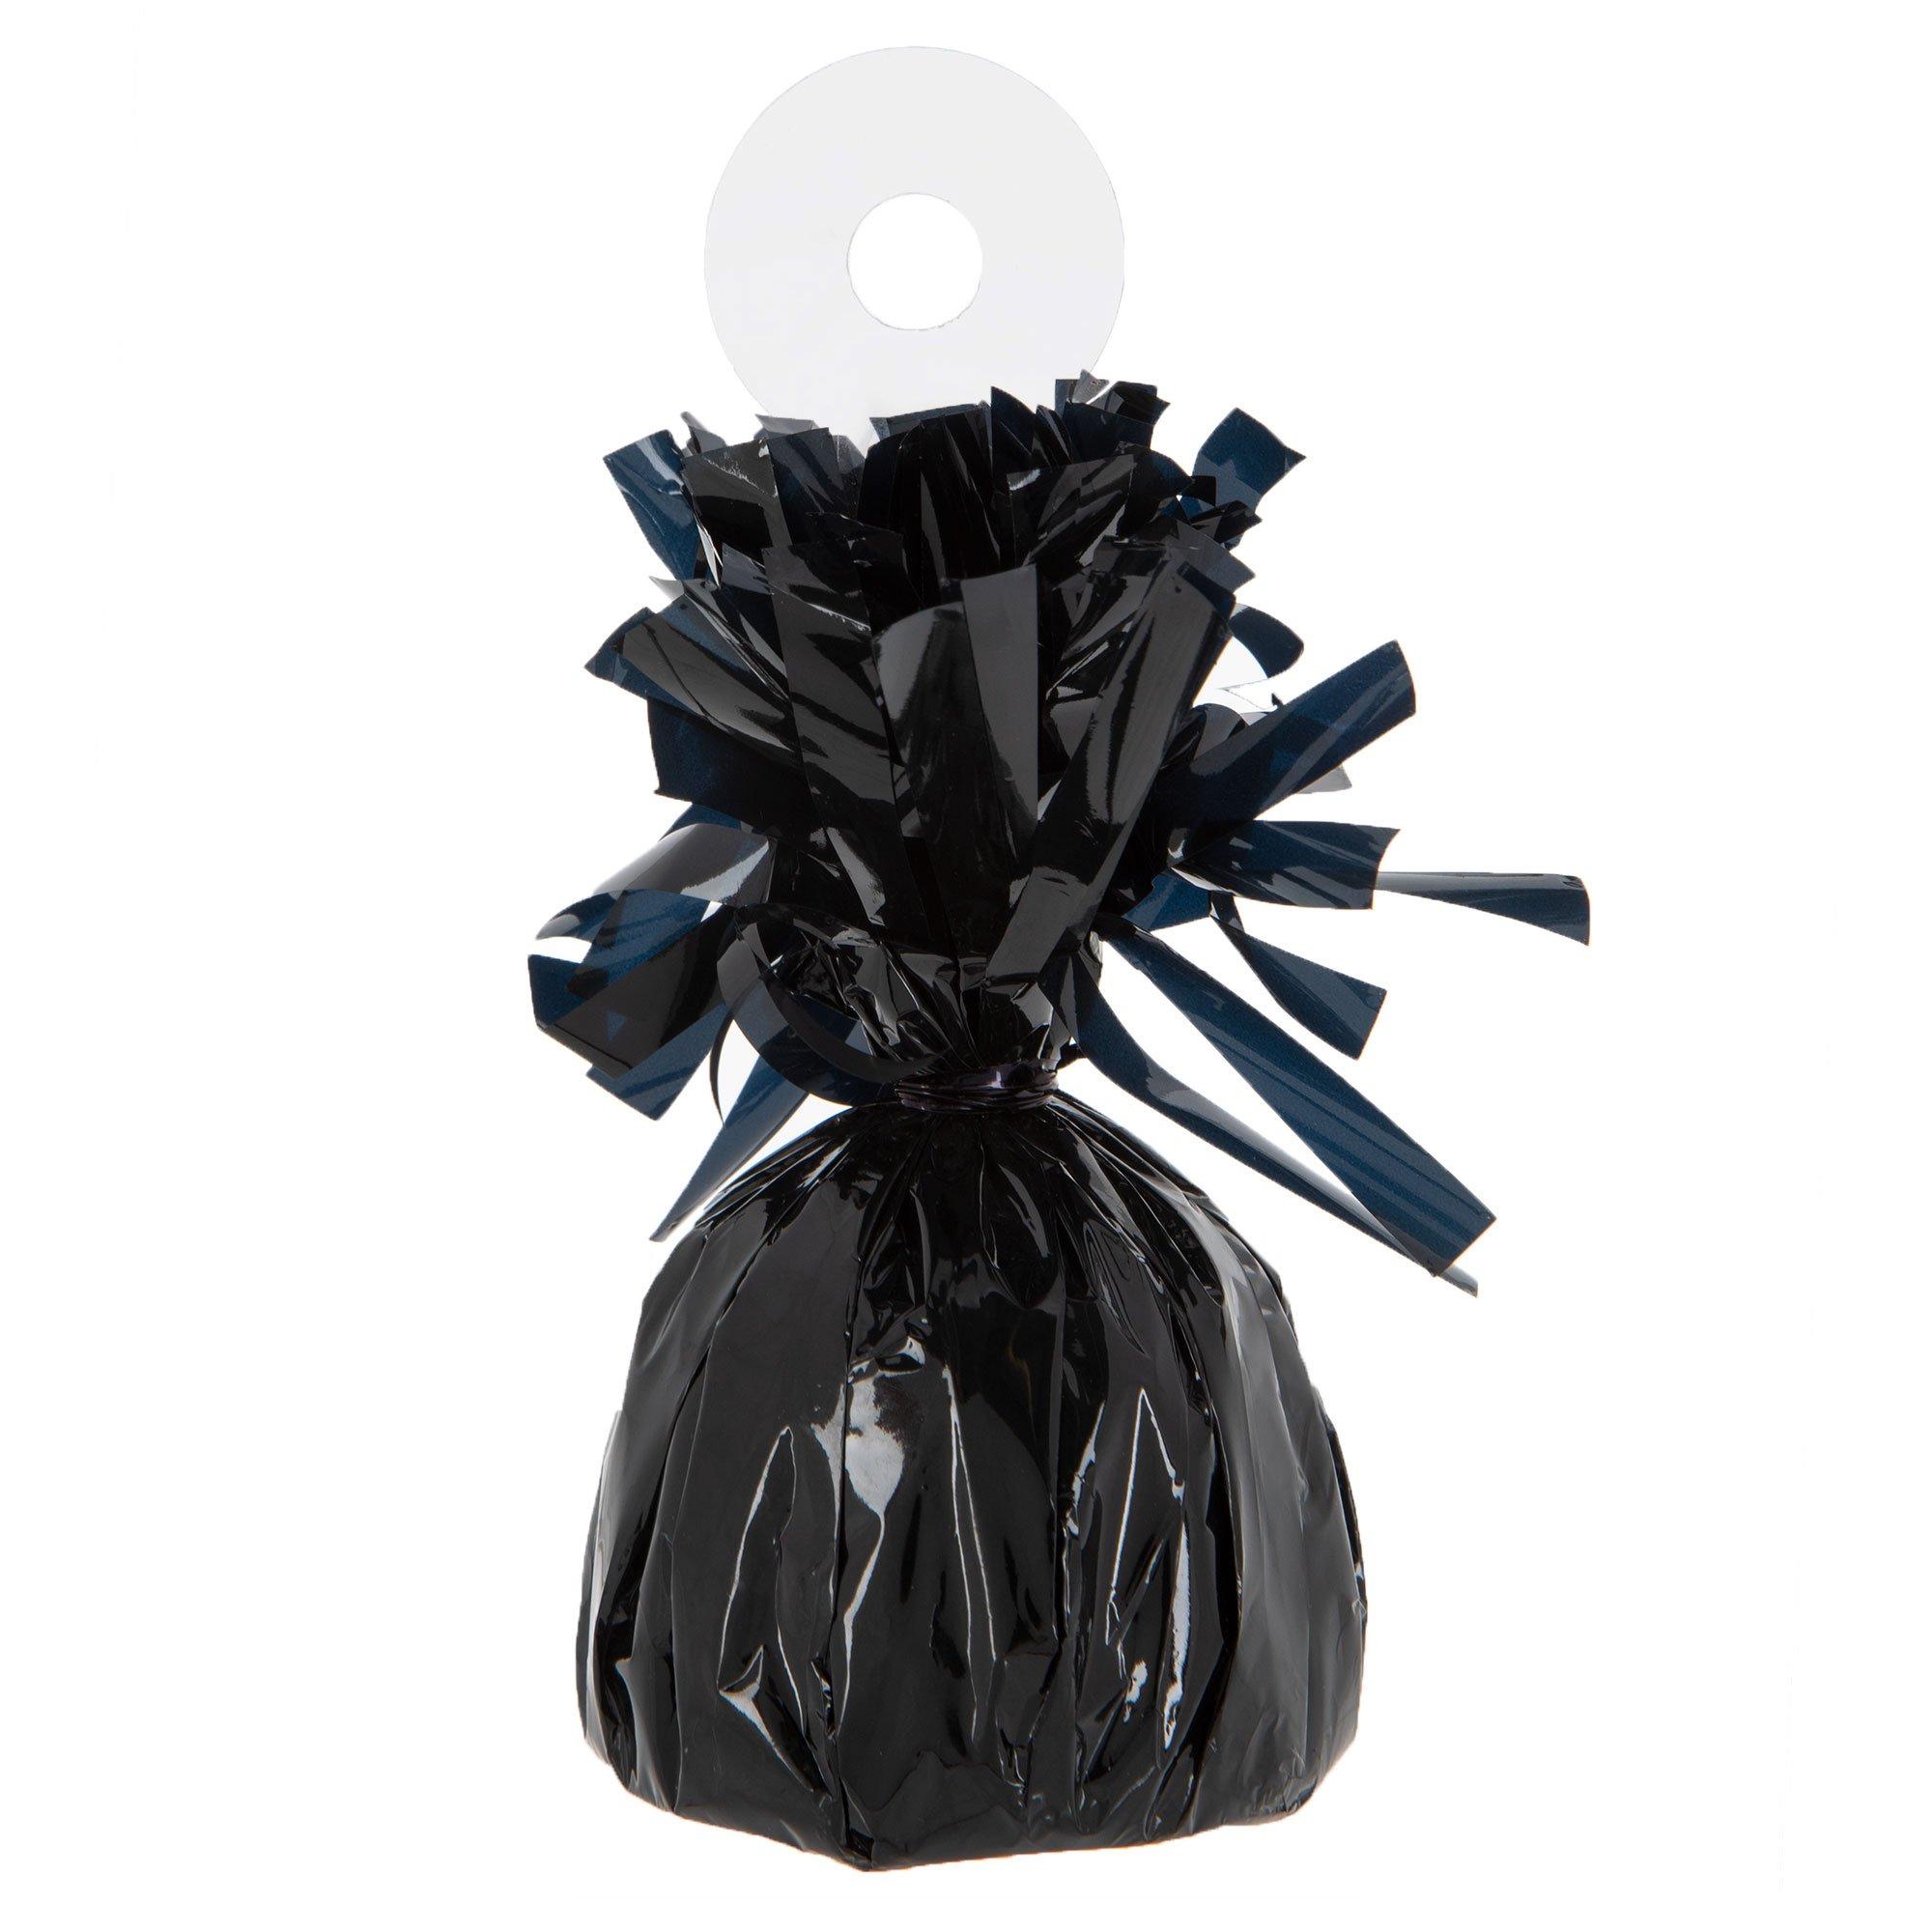 Beistle Metallic Wrapped Balloon Weight, Black, 6 oz